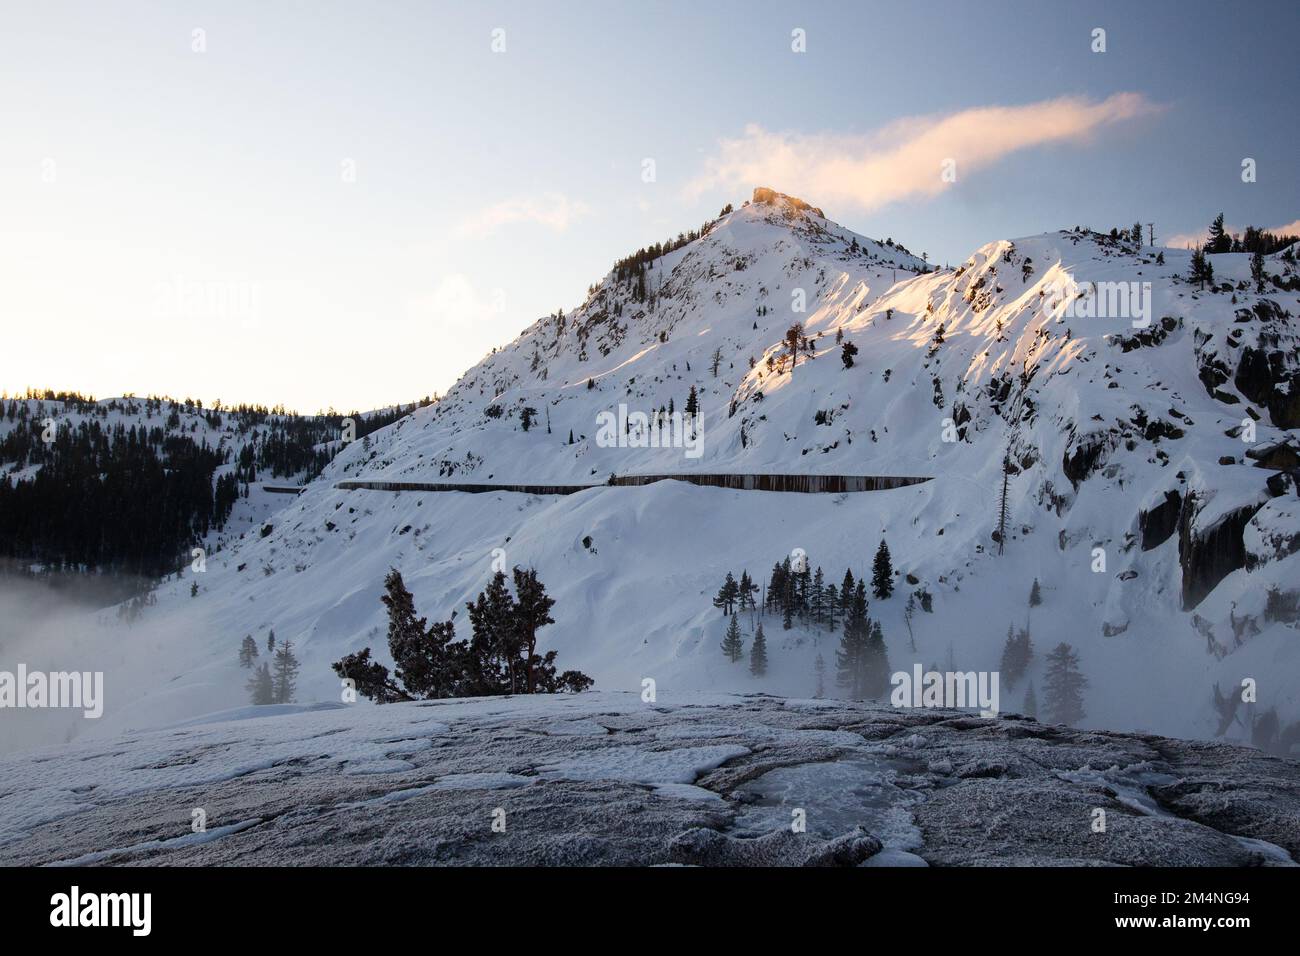 Le matin, une lueur alpine illumine le sommet du col donner un matin d'hiver, l'un des seuls passages majeurs à travers les montagnes de la Sierra Nevada, en Californie Banque D'Images